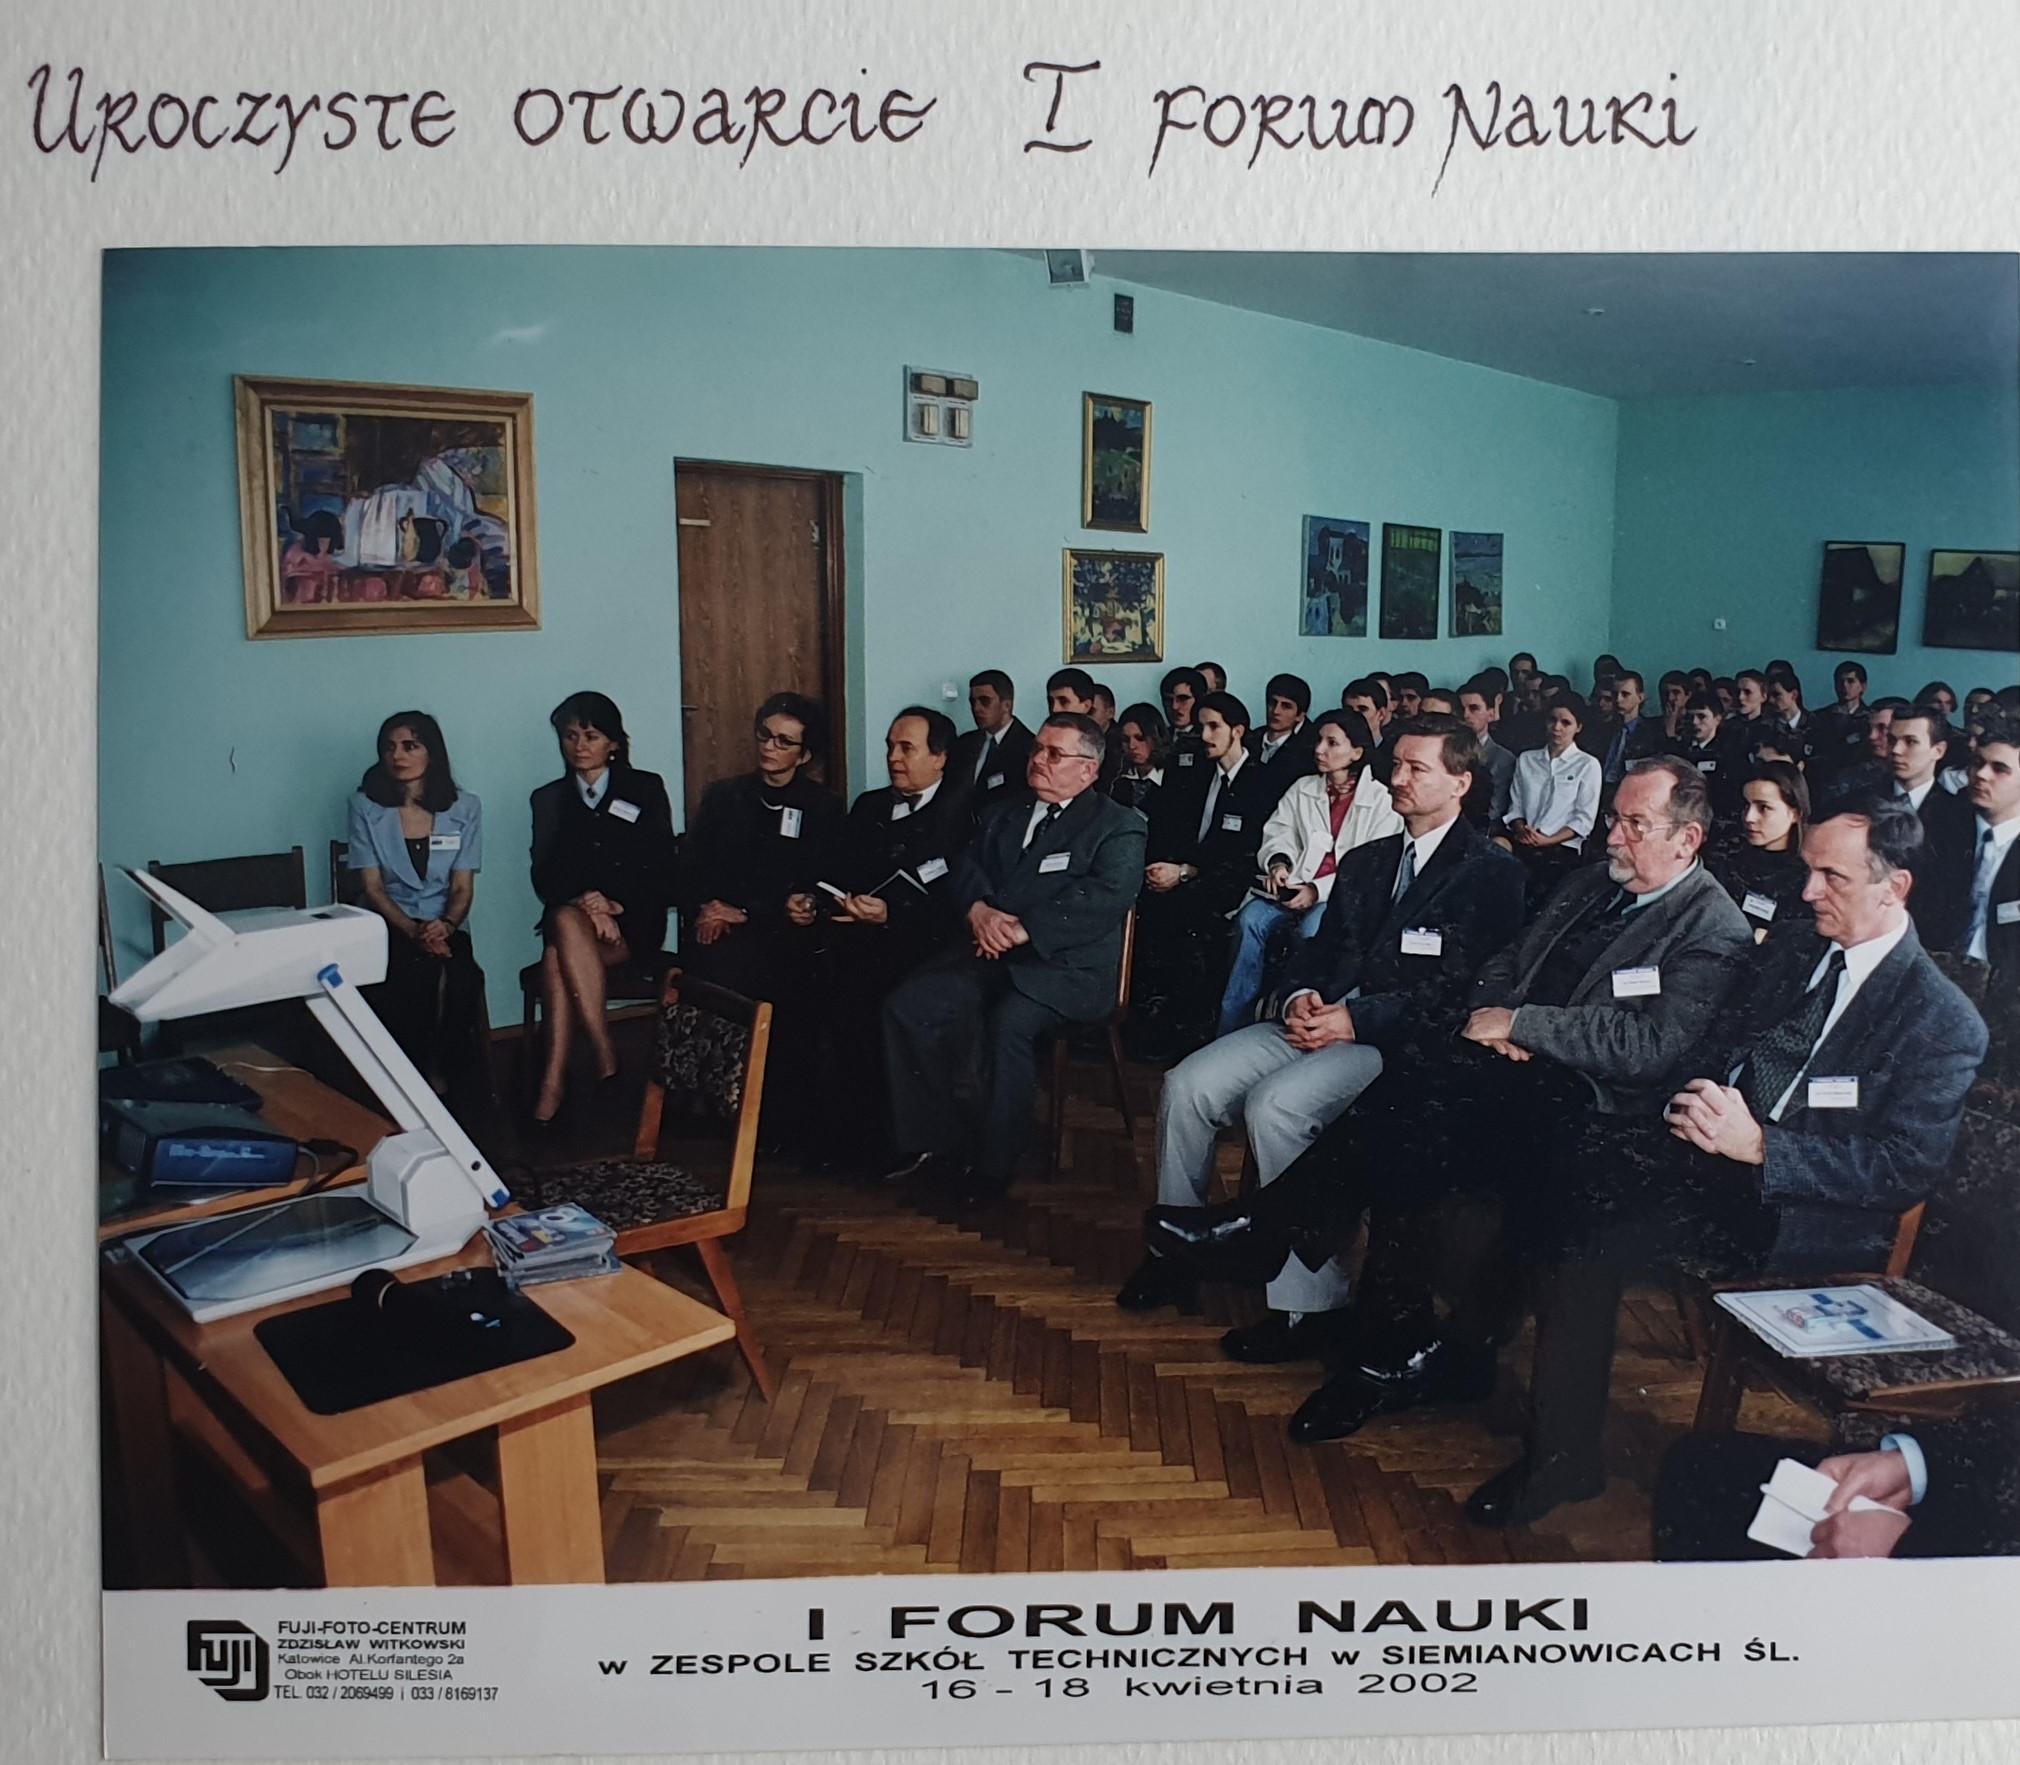 Uroczyste otwarcie I Forum Nauki - aula szkolna, w pierwszym rzędzie siedzą zaproszeni goście, za nimi młodzież Meritum